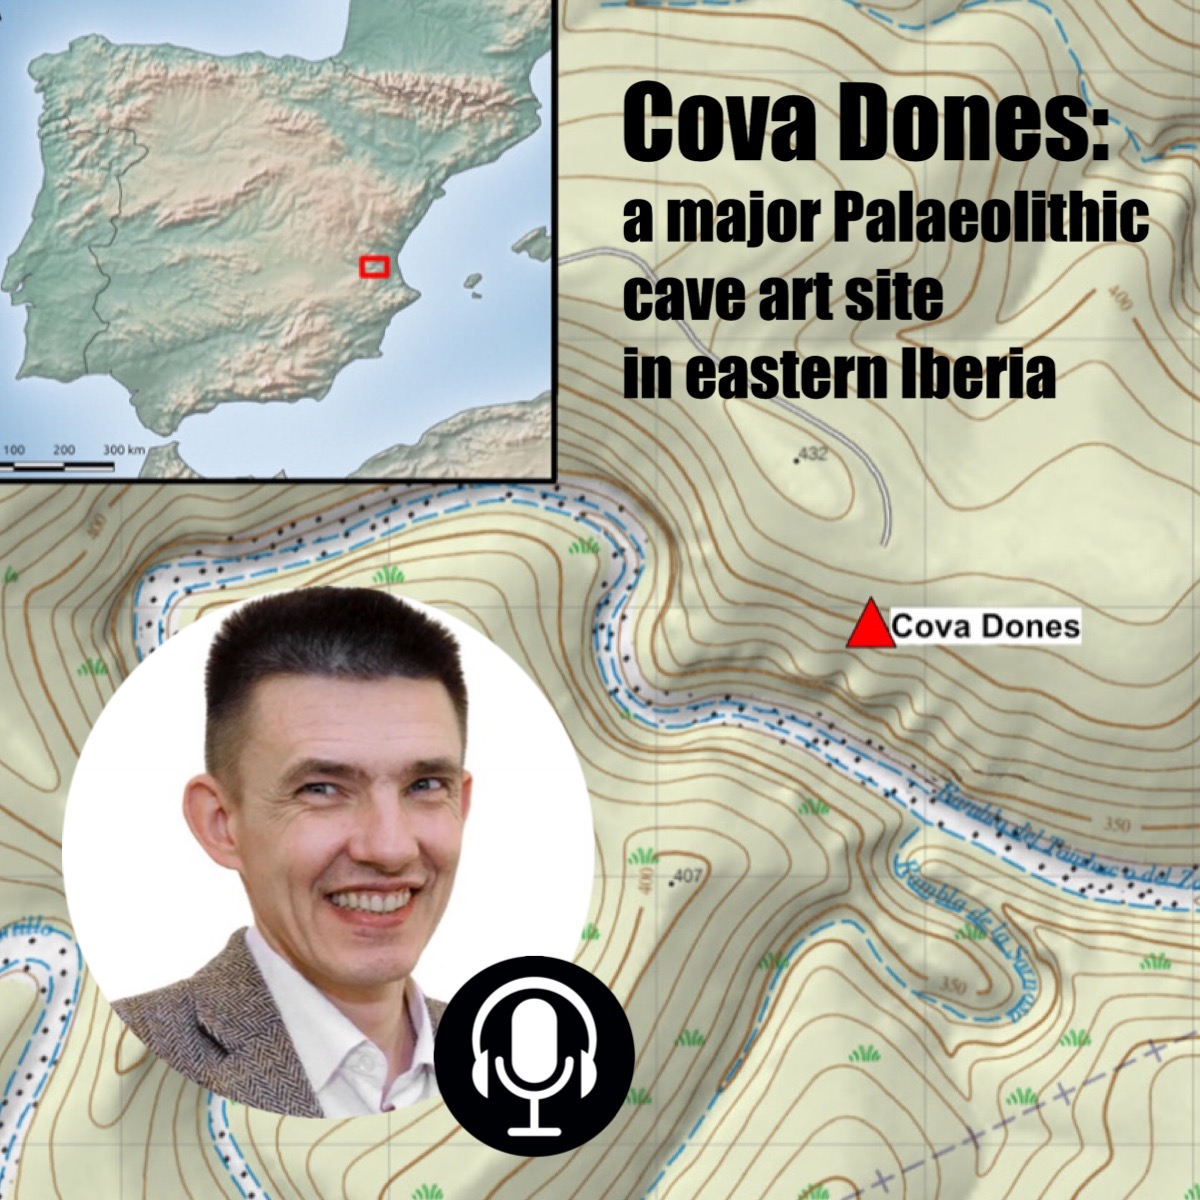 В.С. Житенев рассказал изданию "N+1" о значении находок в пещере Донес (Испания)